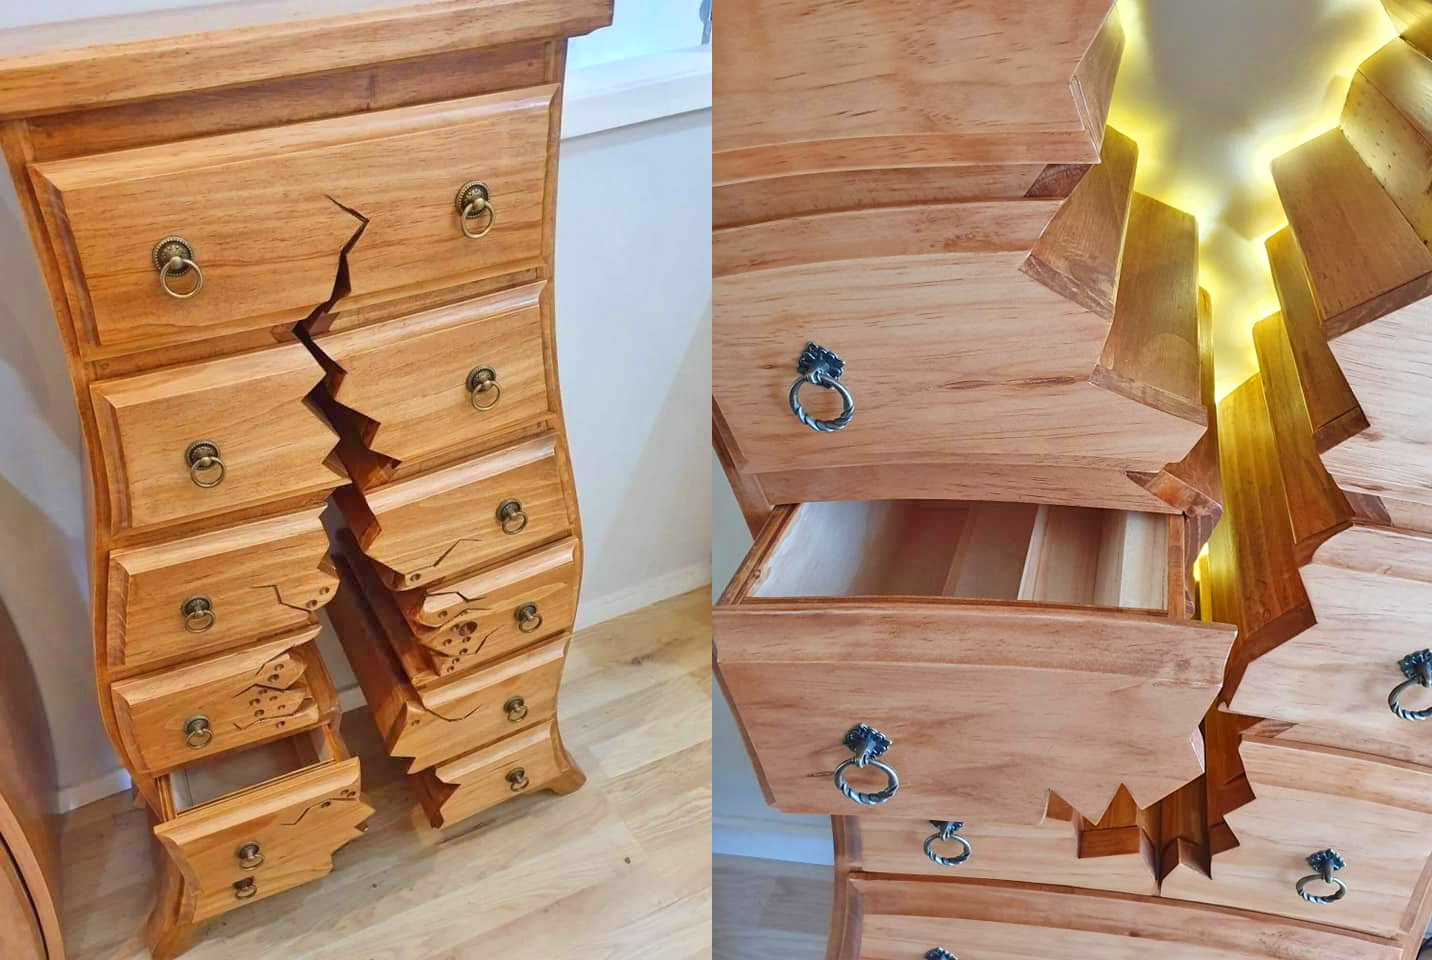 Henk Verhoeff Warped and Cracked Dresser Designs - Fairytale warped dresser woodworking